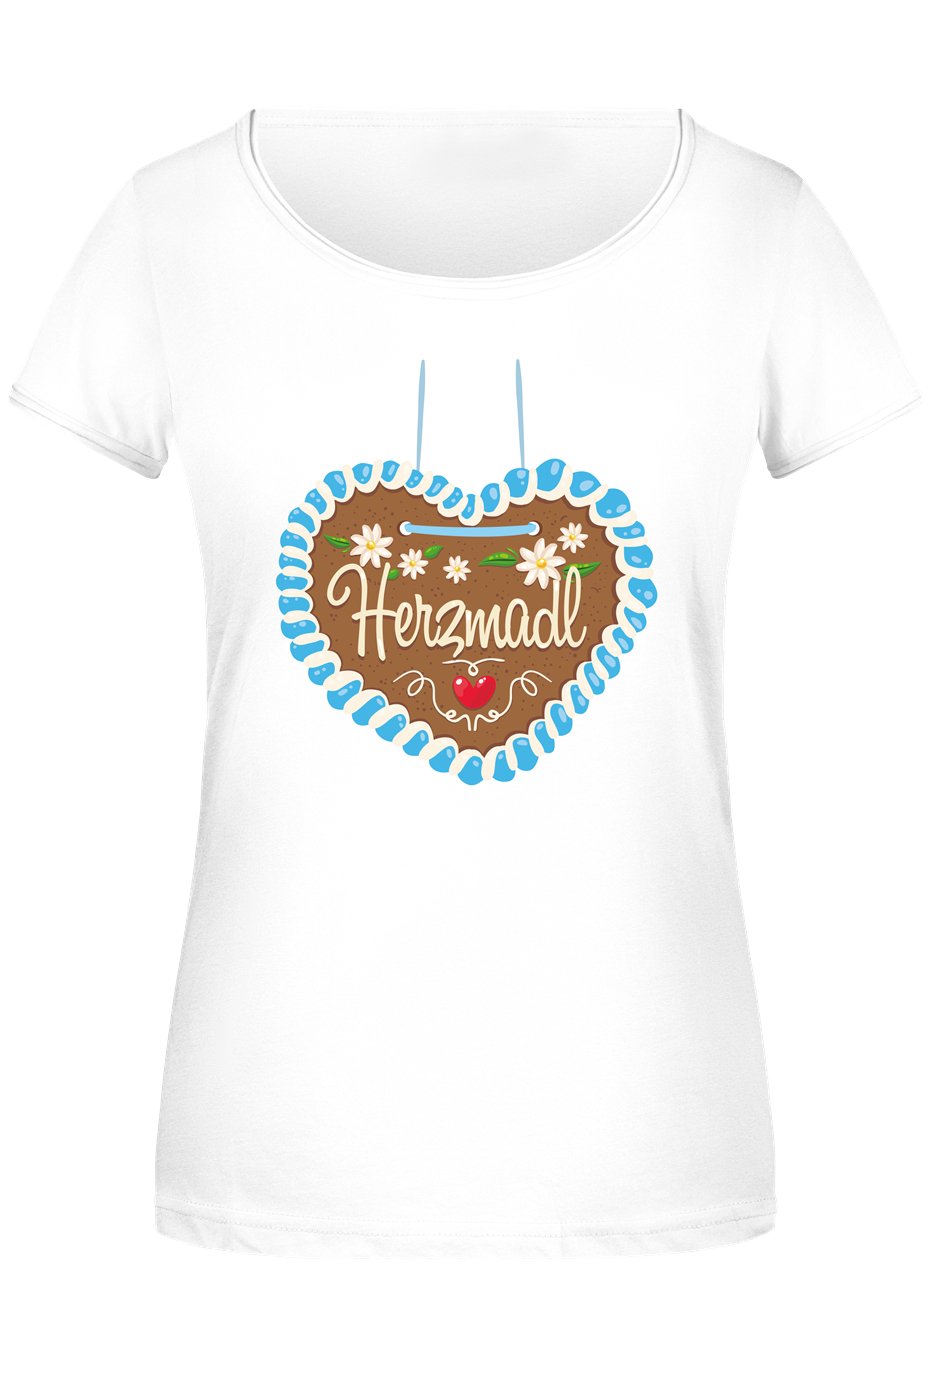 Bild: T-Shirt Damen - Herzmadl (Lebkuchenherz) Geschenkidee